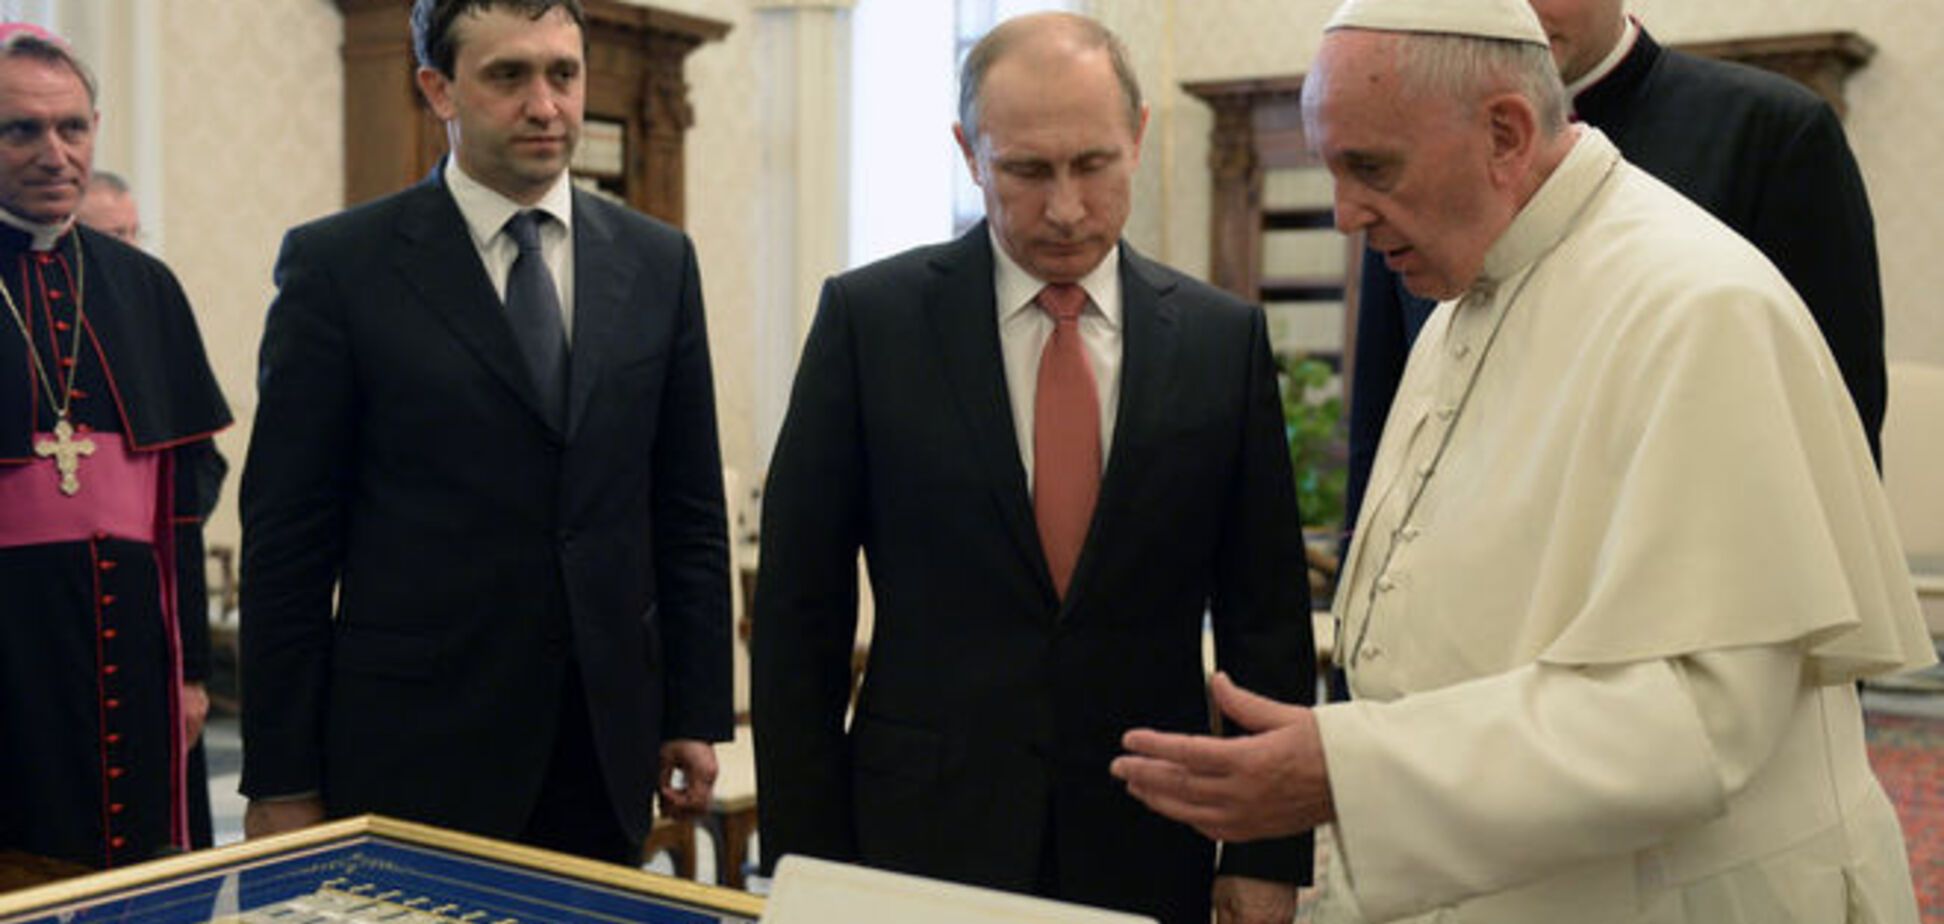 Всього лише фейк: у Папи розповіли про 'медалі' для Путіна